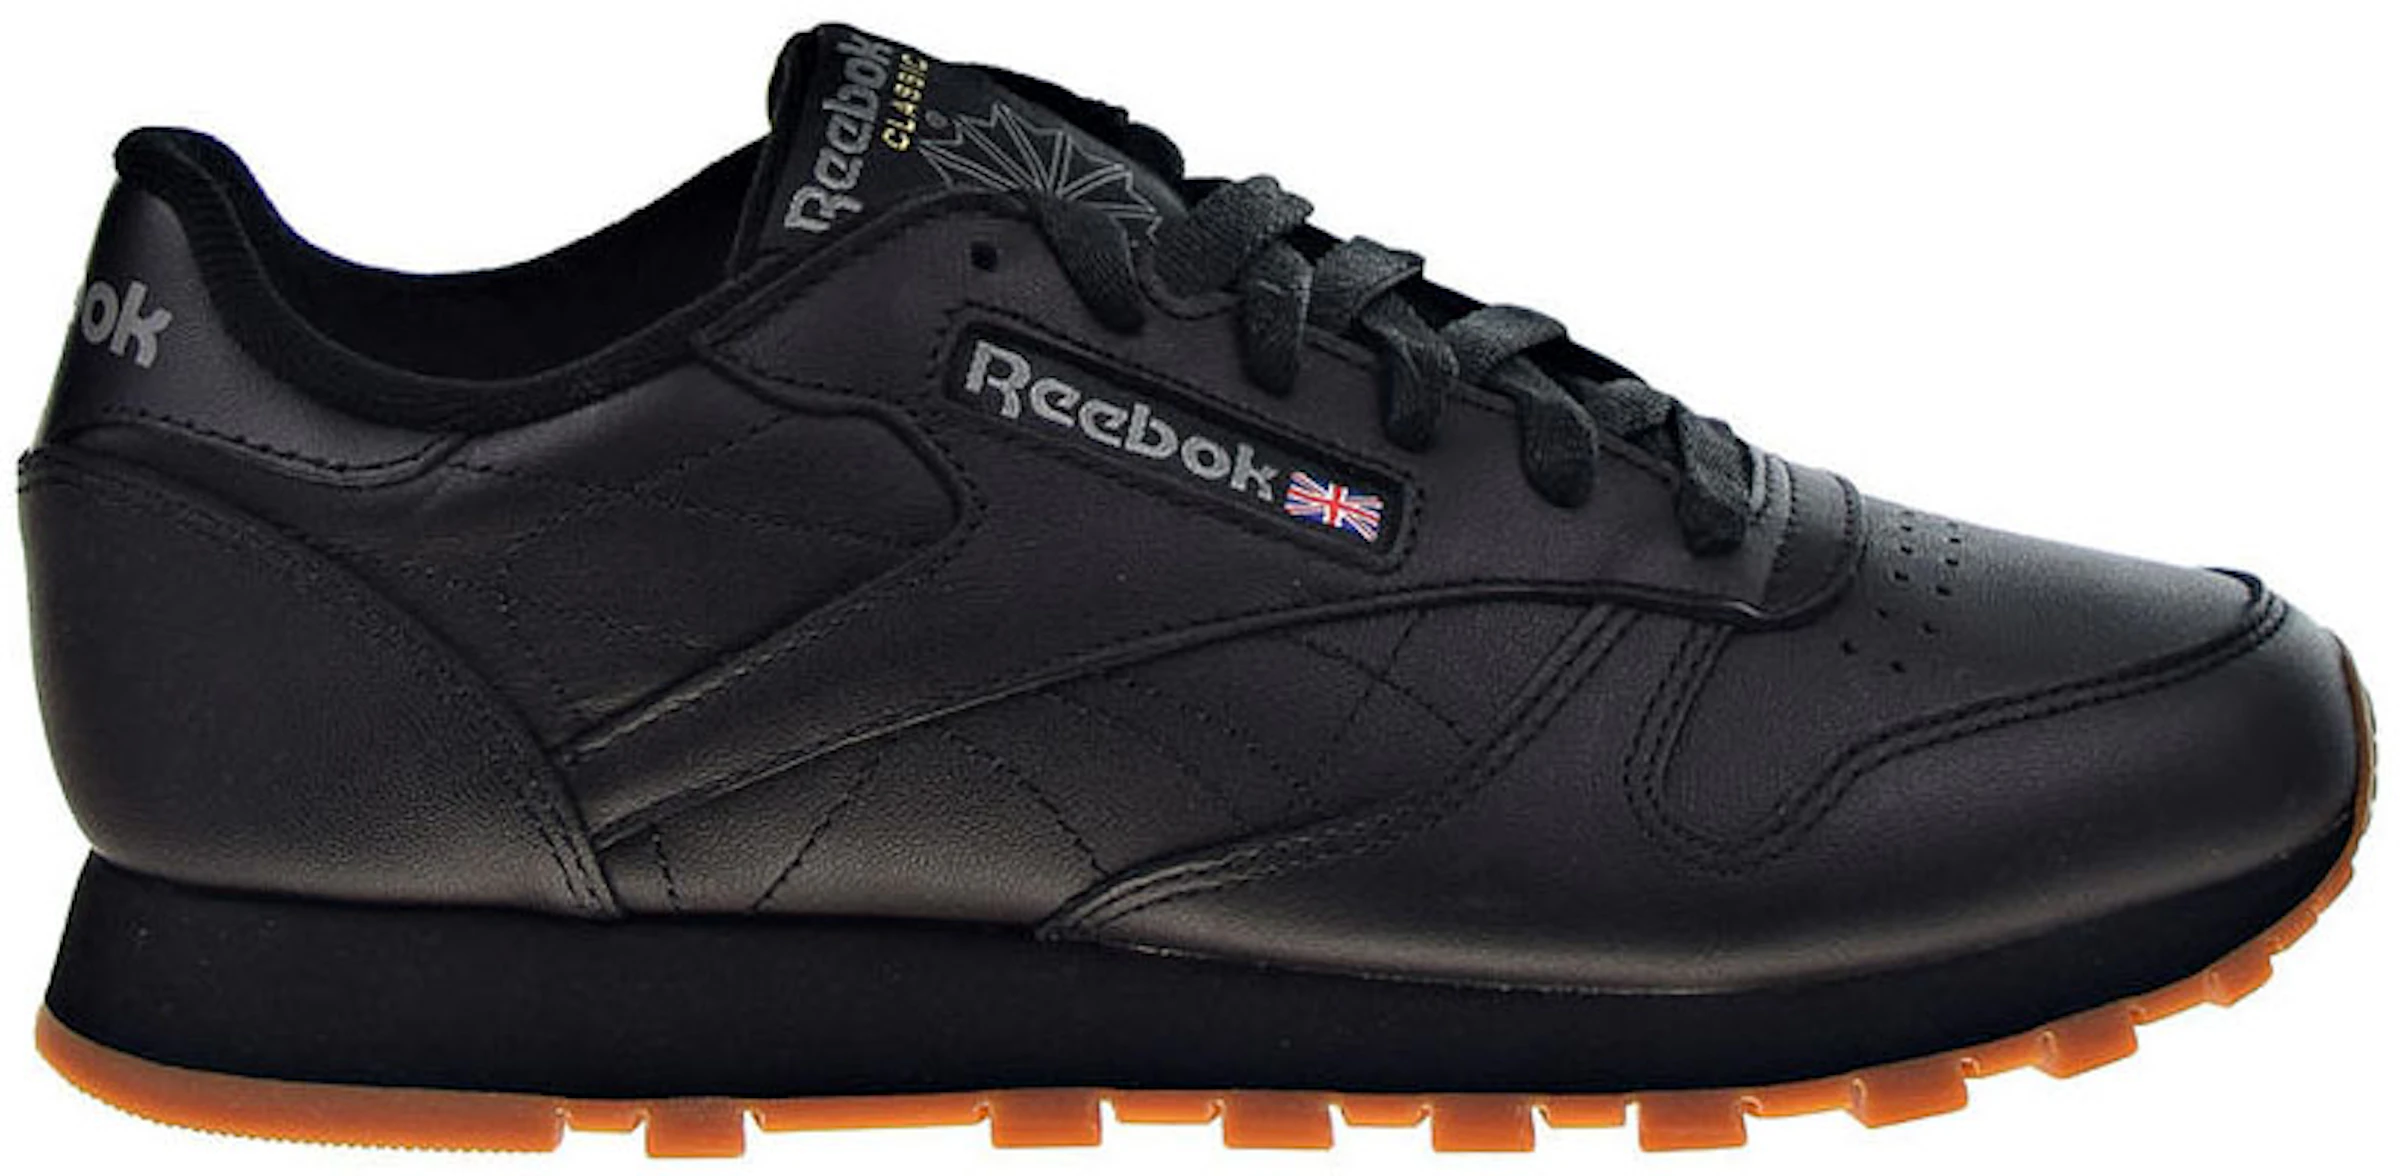 Reebok Leather Black Gum (W) - 49802 - ES